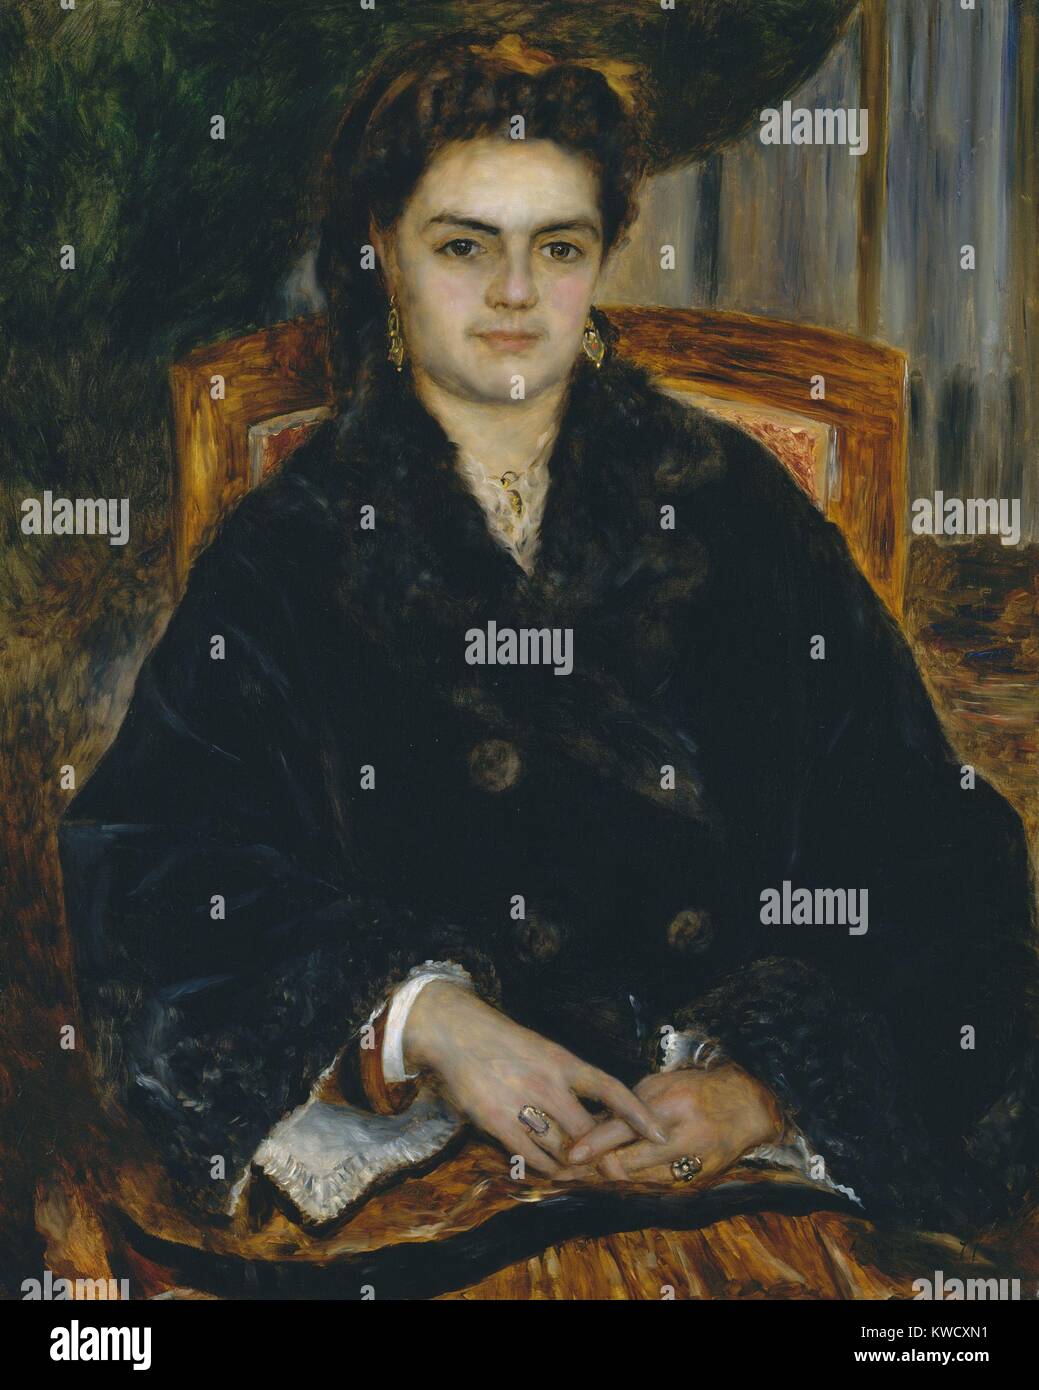 Madame Edouard Bernier, par Auguste Renoir, 1871, la peinture impressionniste français, huile sur toile. La gardienne était l'épouse du commandant du régiment de Renoirs au cours de la guerre franco-prussienne (1870-71) (BSLOC 2017 3 69) Banque D'Images